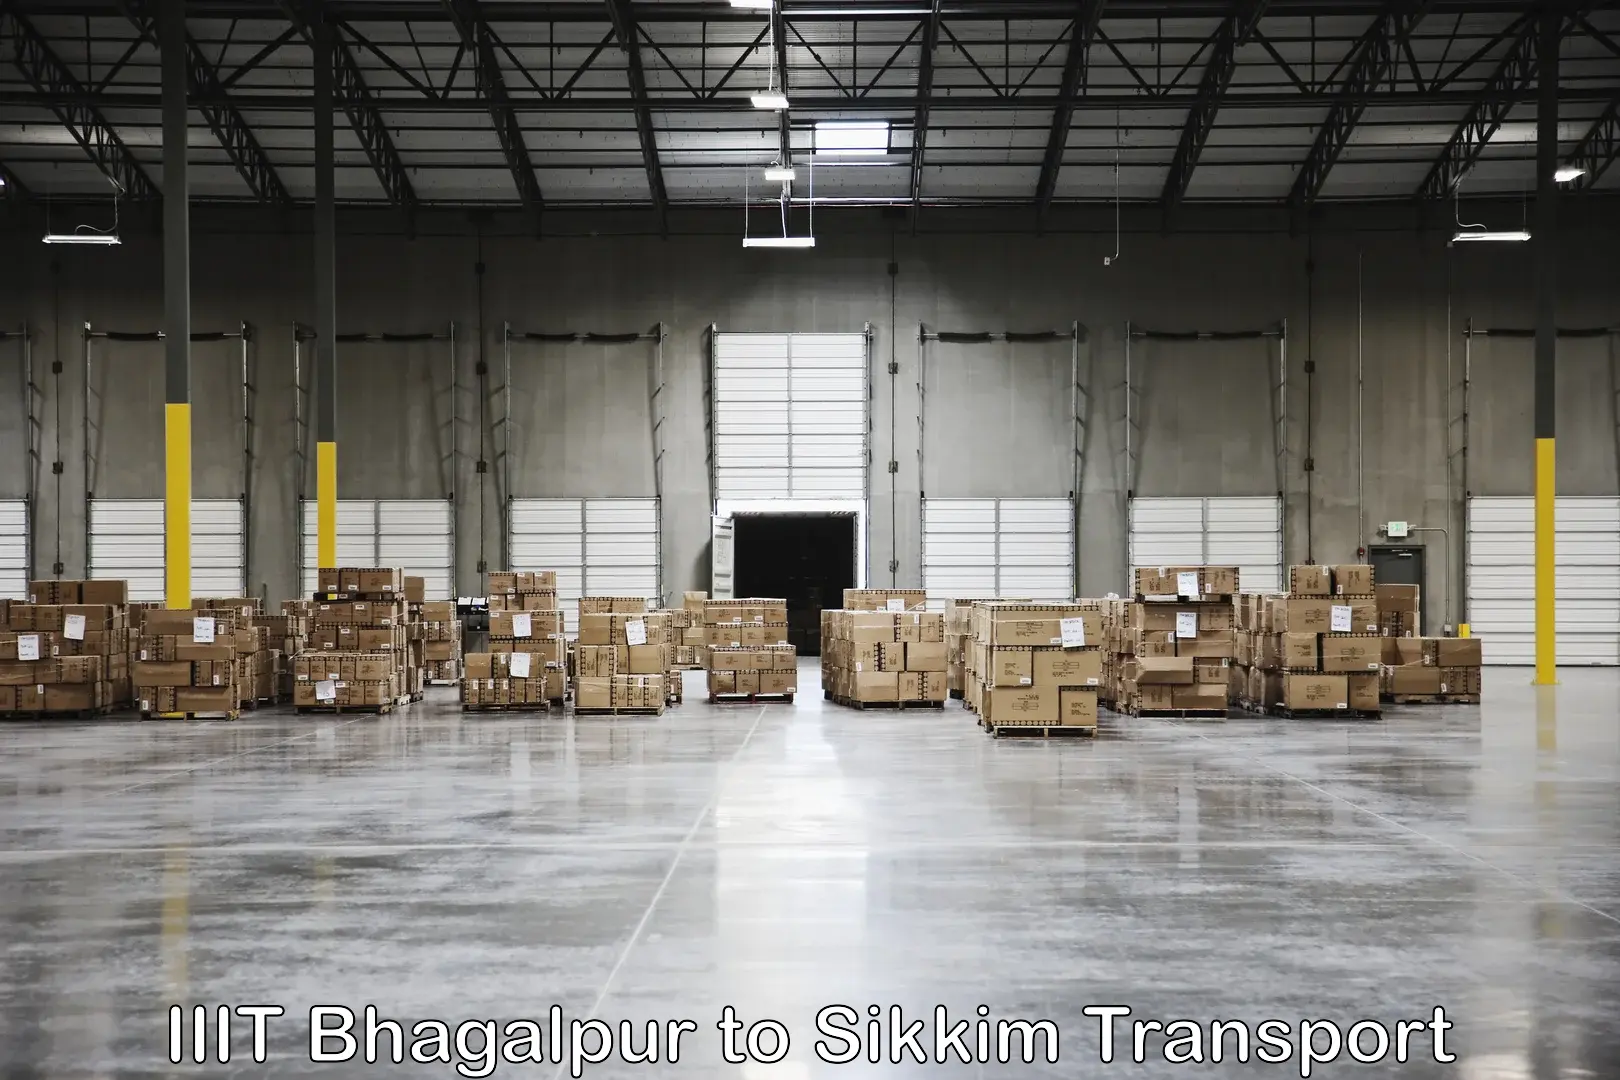 Interstate transport services IIIT Bhagalpur to Singtam